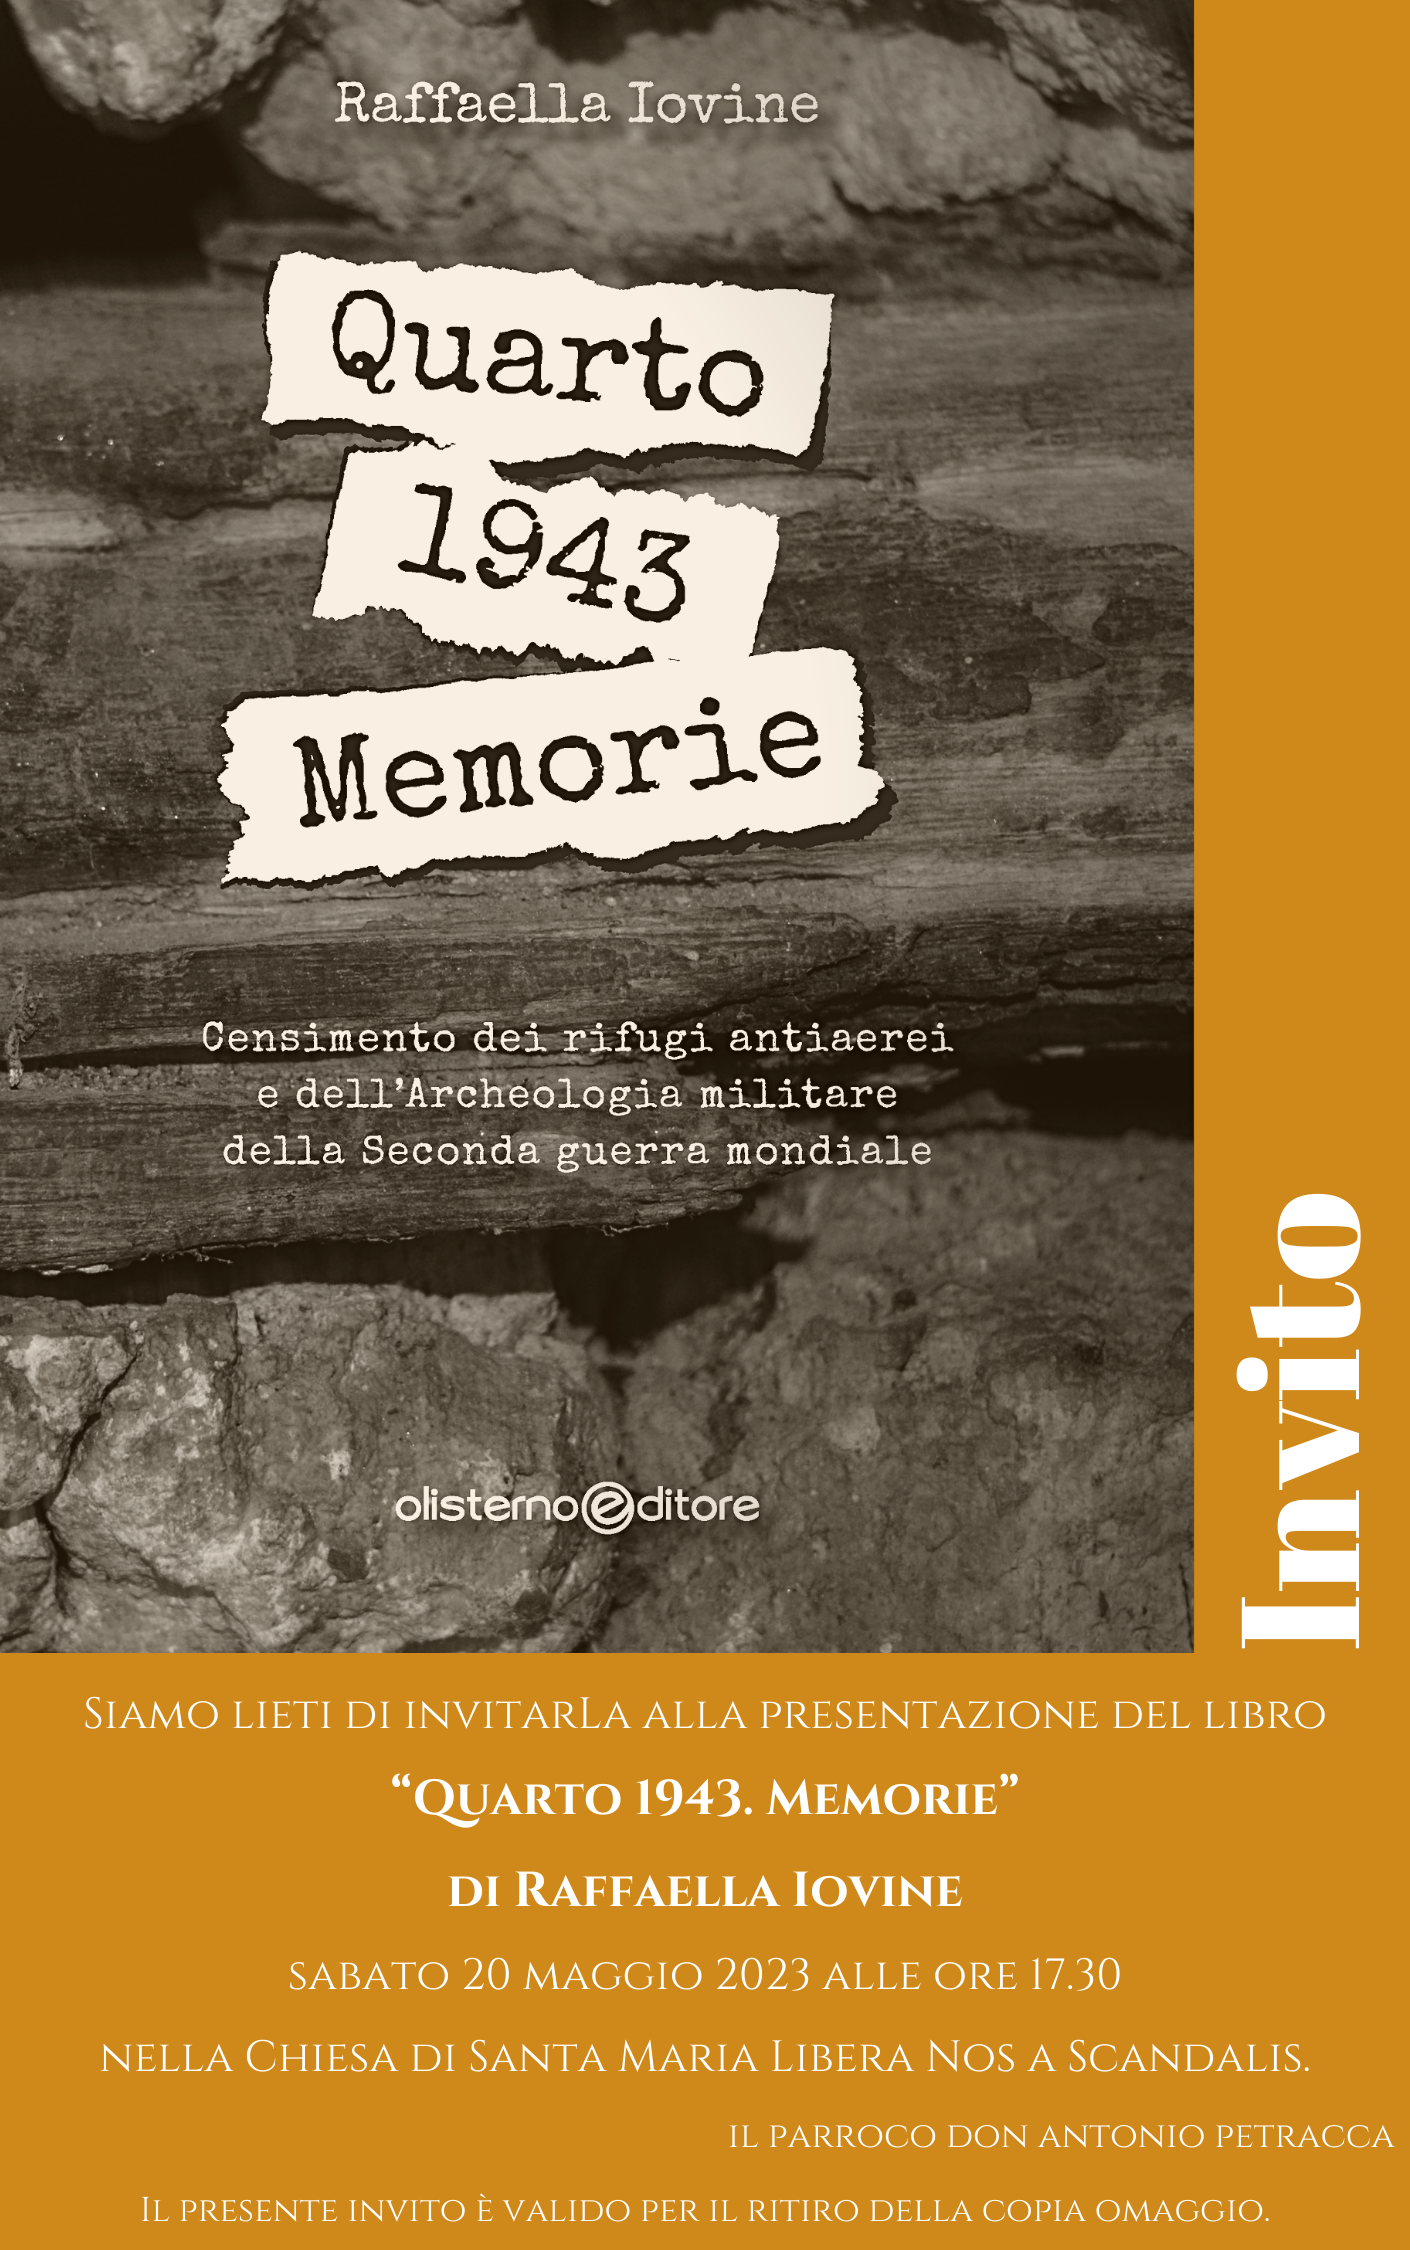 Raffaella Iovine presenta il libro “Quarto 1943. Memorie”